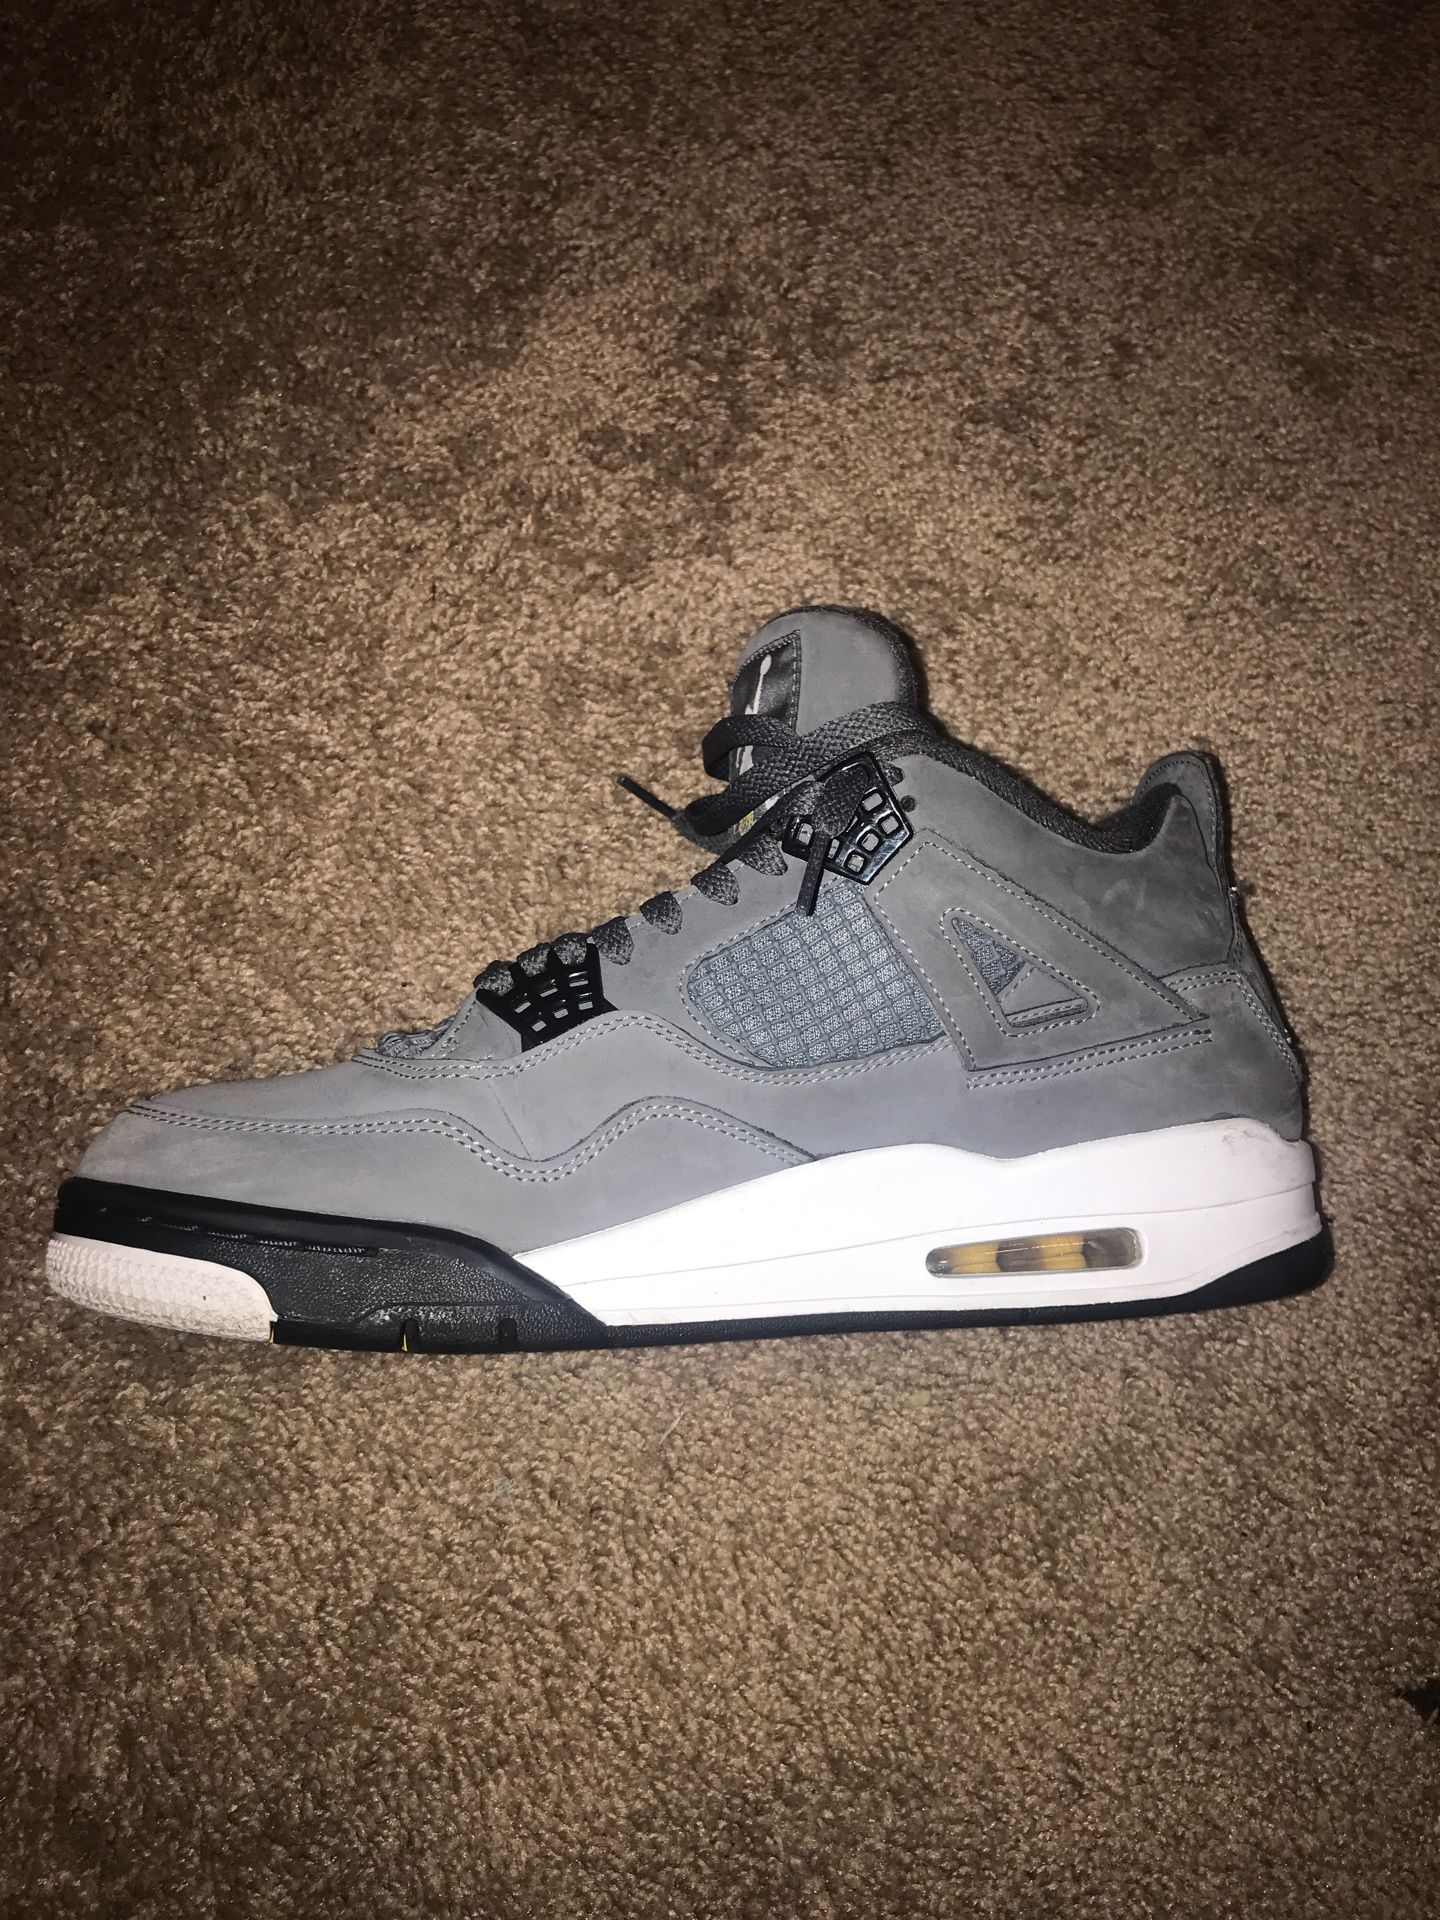 Jordan 4 grey size 10